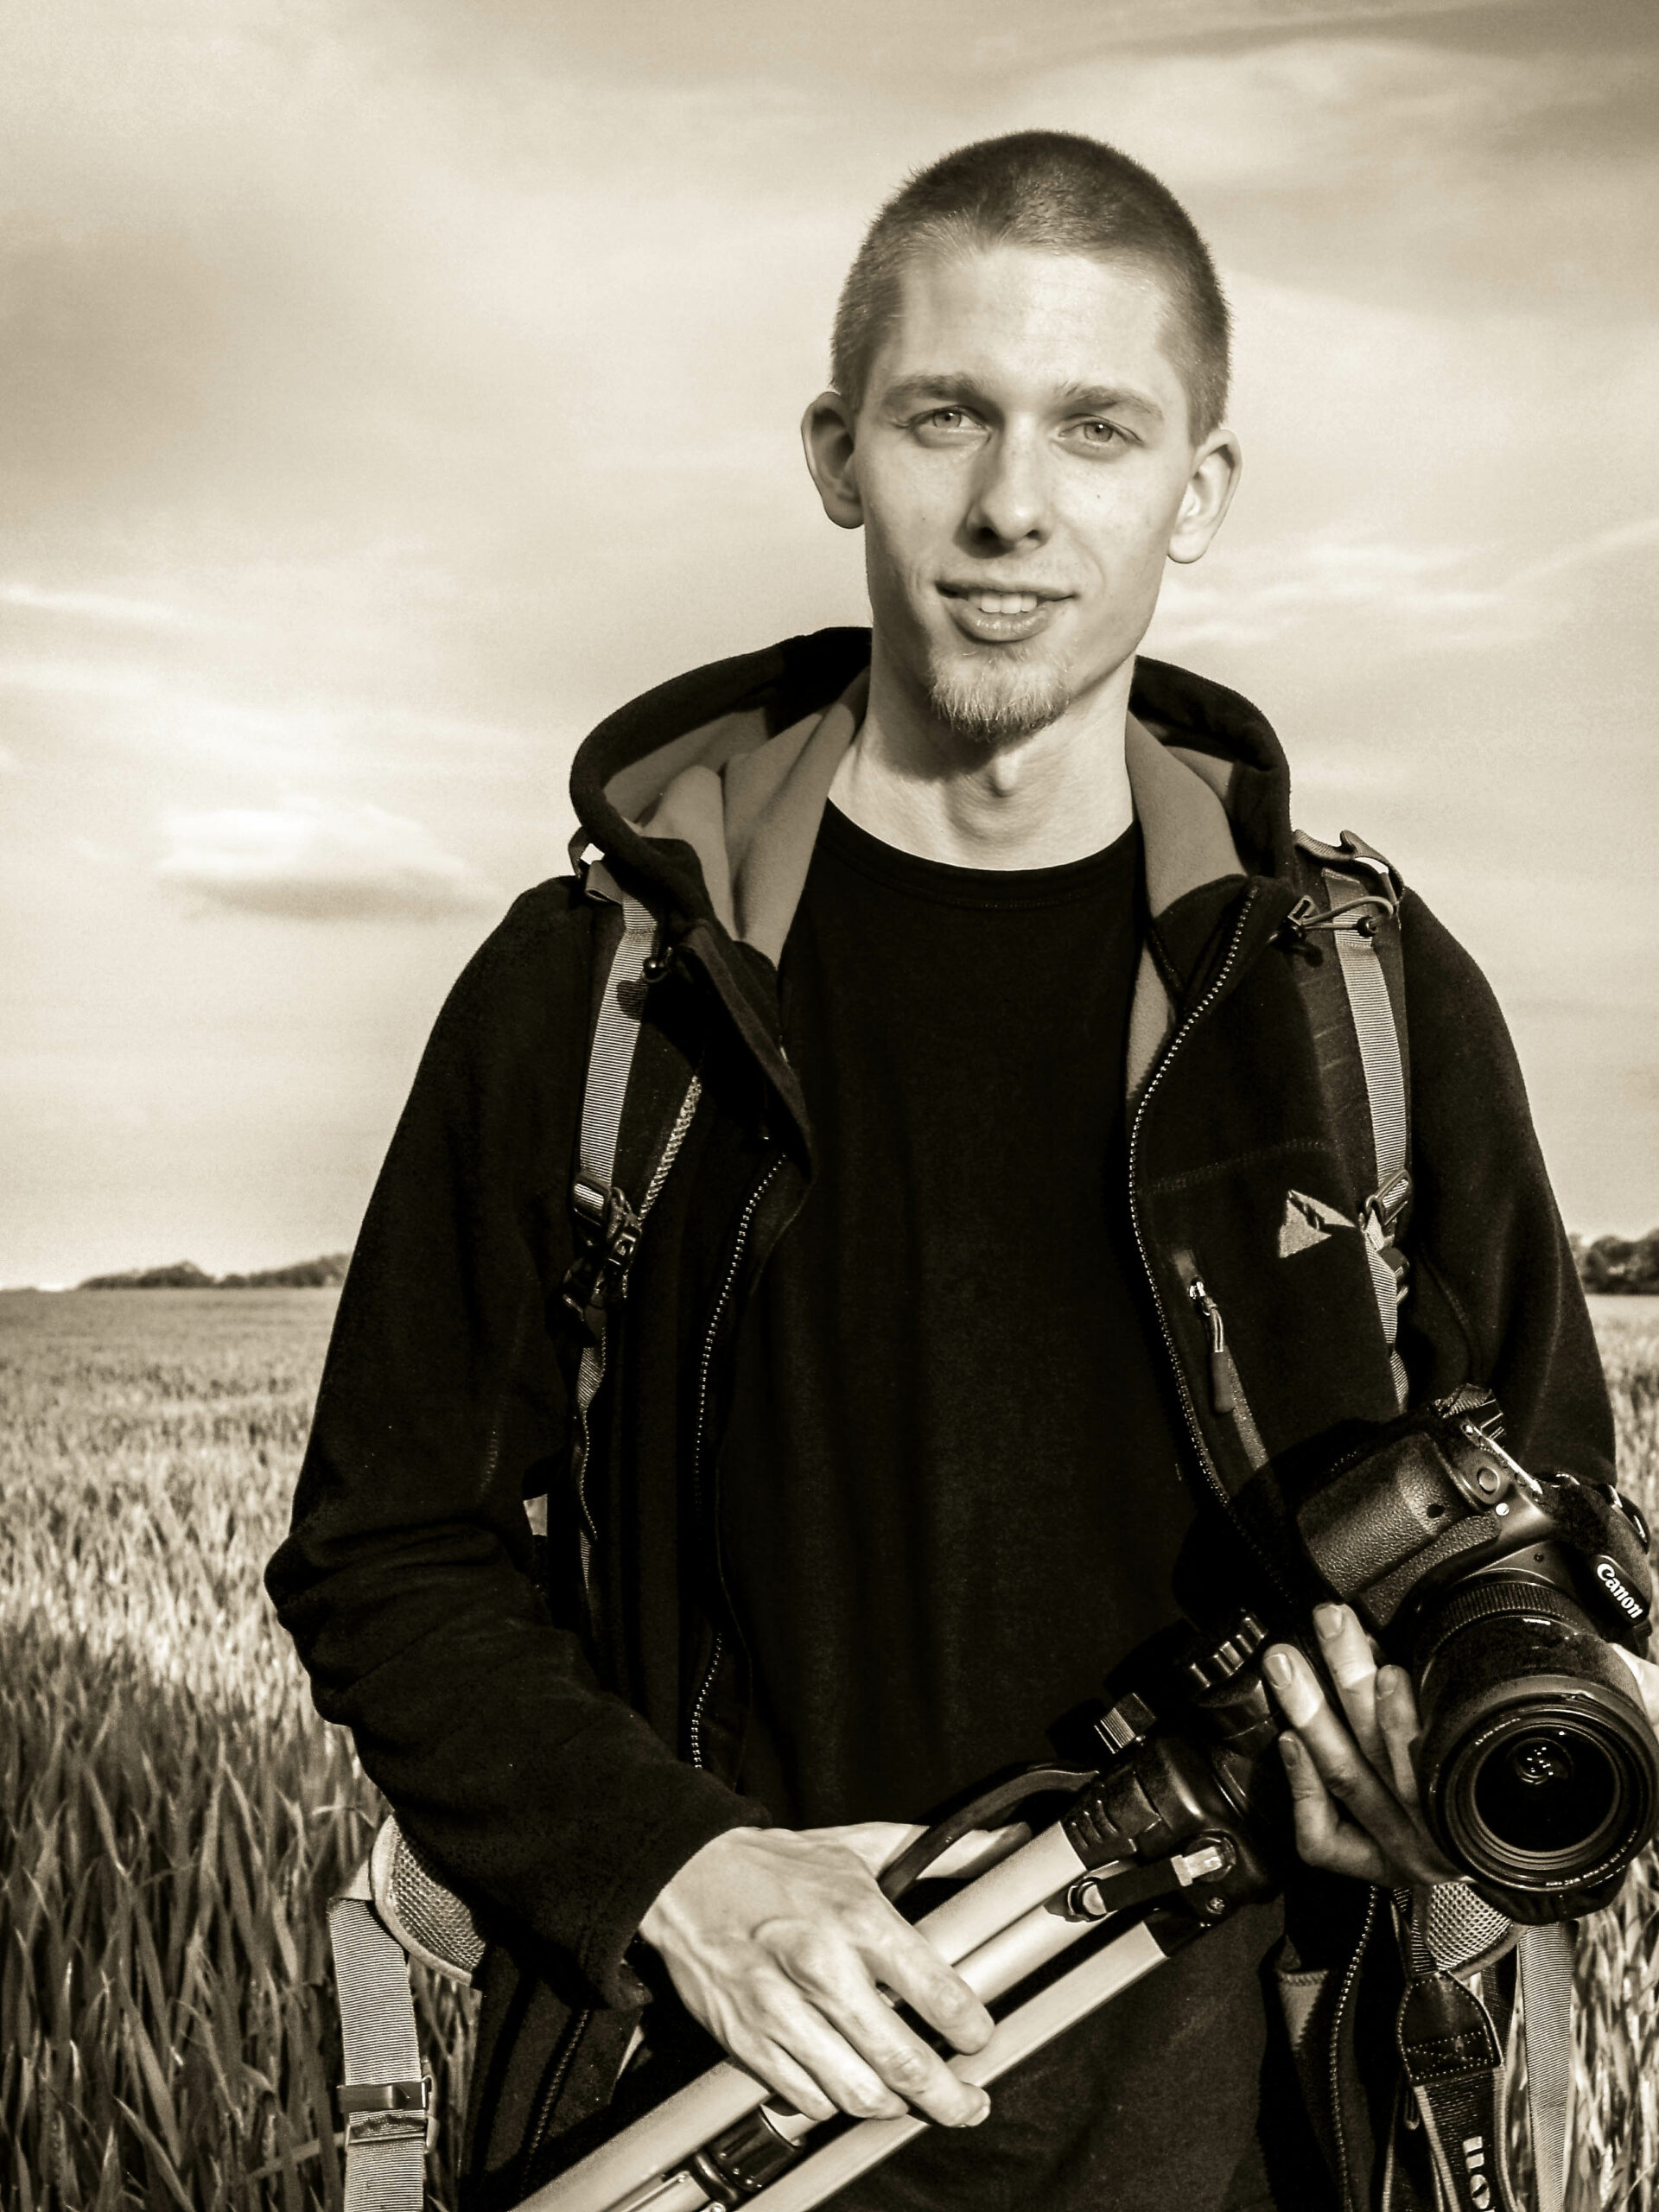 Christian Buhtz mit Fotografieausrüstung